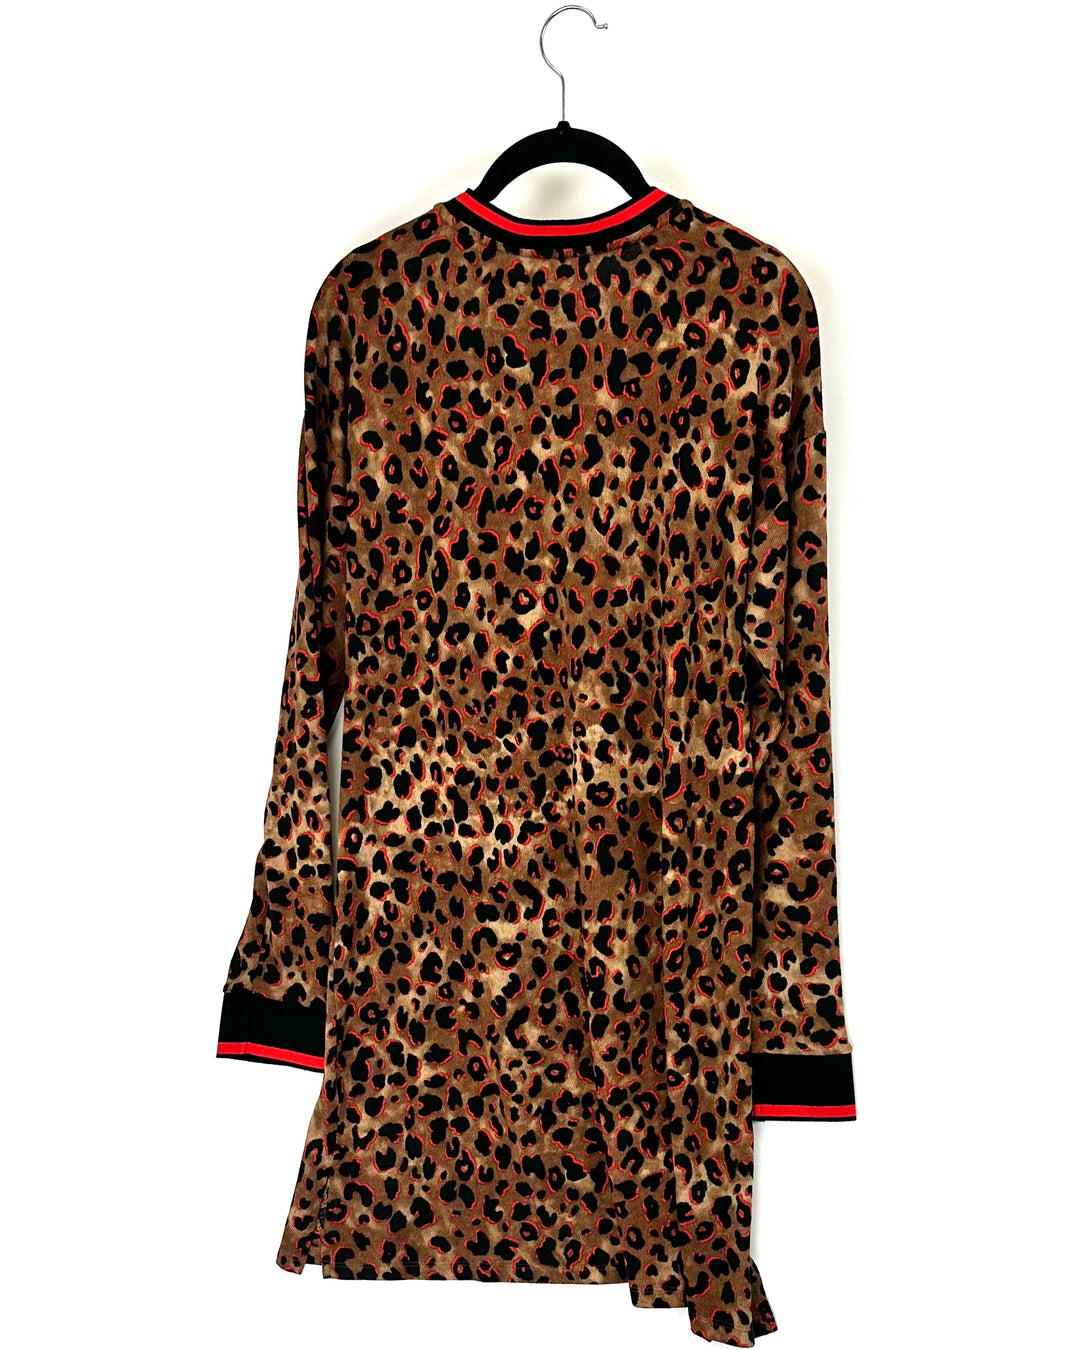 Leopard Print Nightgown - Small